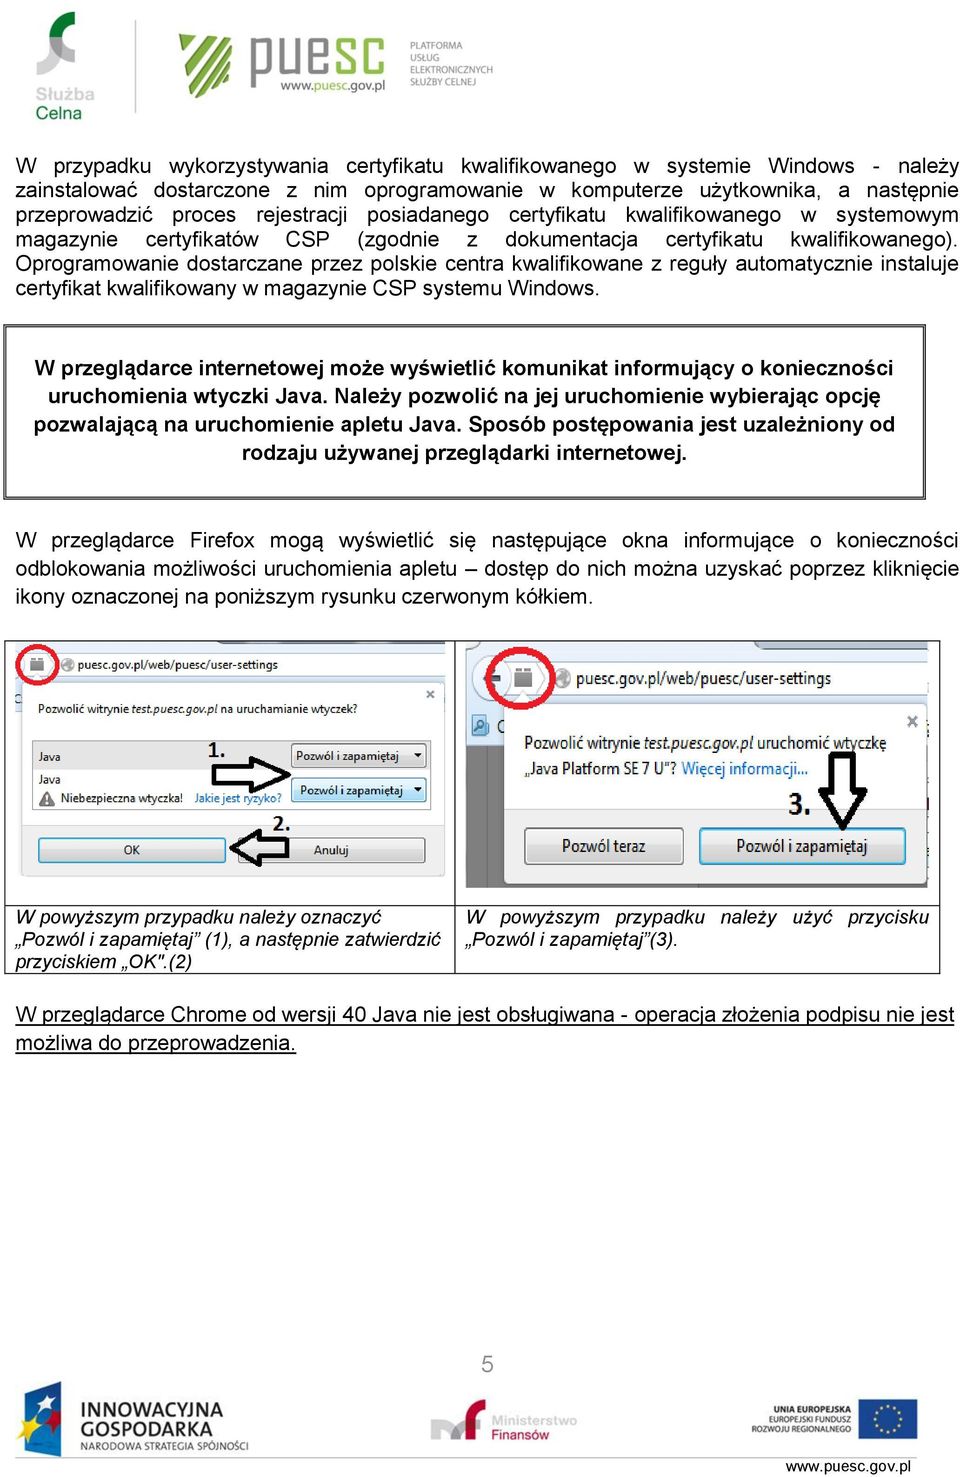 Oprogramowanie dostarczane przez polskie centra kwalifikowane z reguły automatycznie instaluje certyfikat kwalifikowany w magazynie CSP systemu Windows.